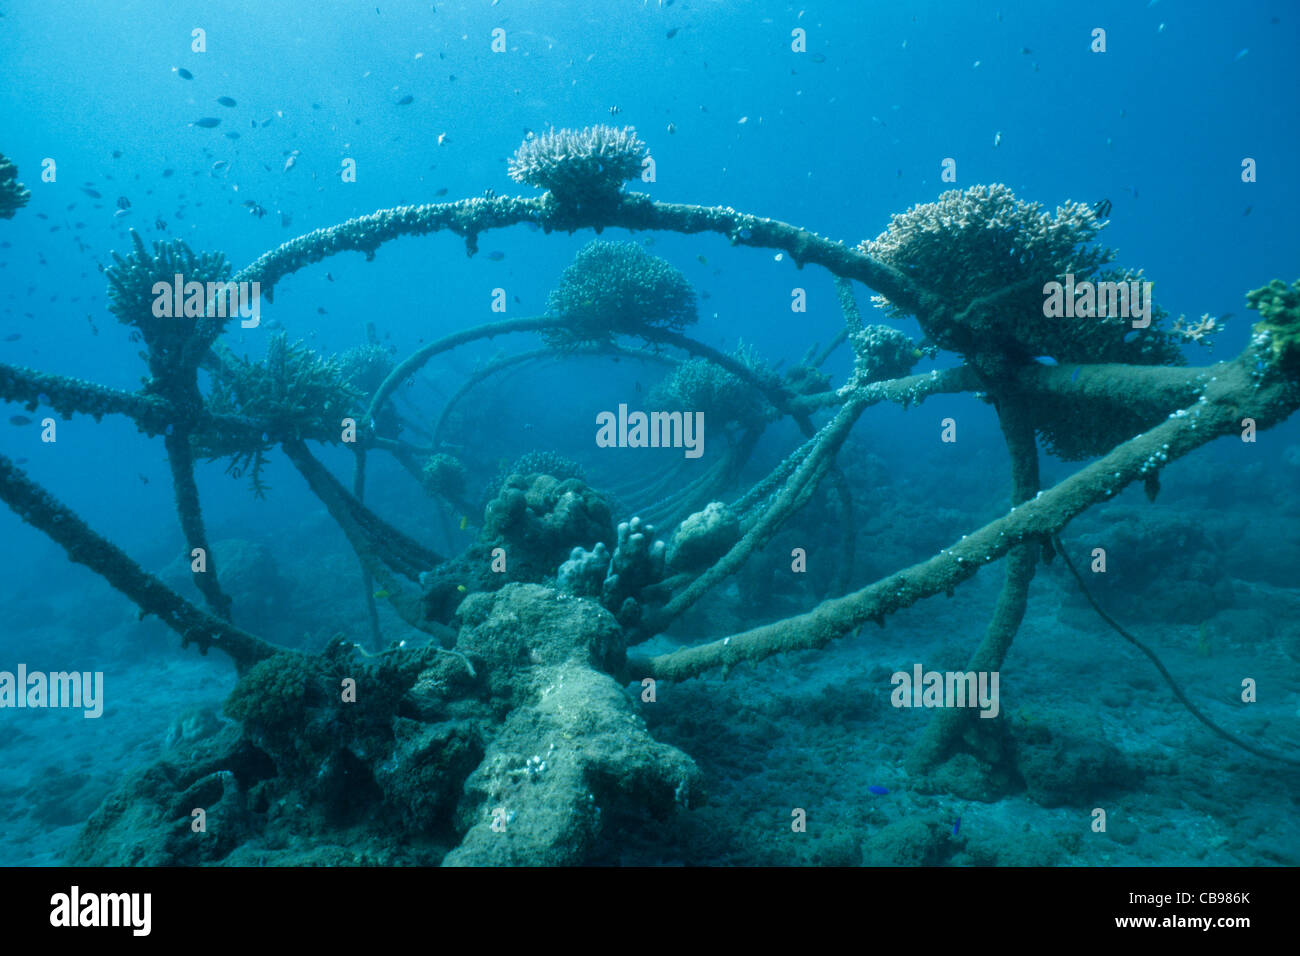 Reef artificiale, bio-rock, a bassa tensione di alimentazione, coralli duri, metodo di migliorare la crescita di coralli e organismi acquatici, Pemuteran, Bali, Indonesia Foto Stock